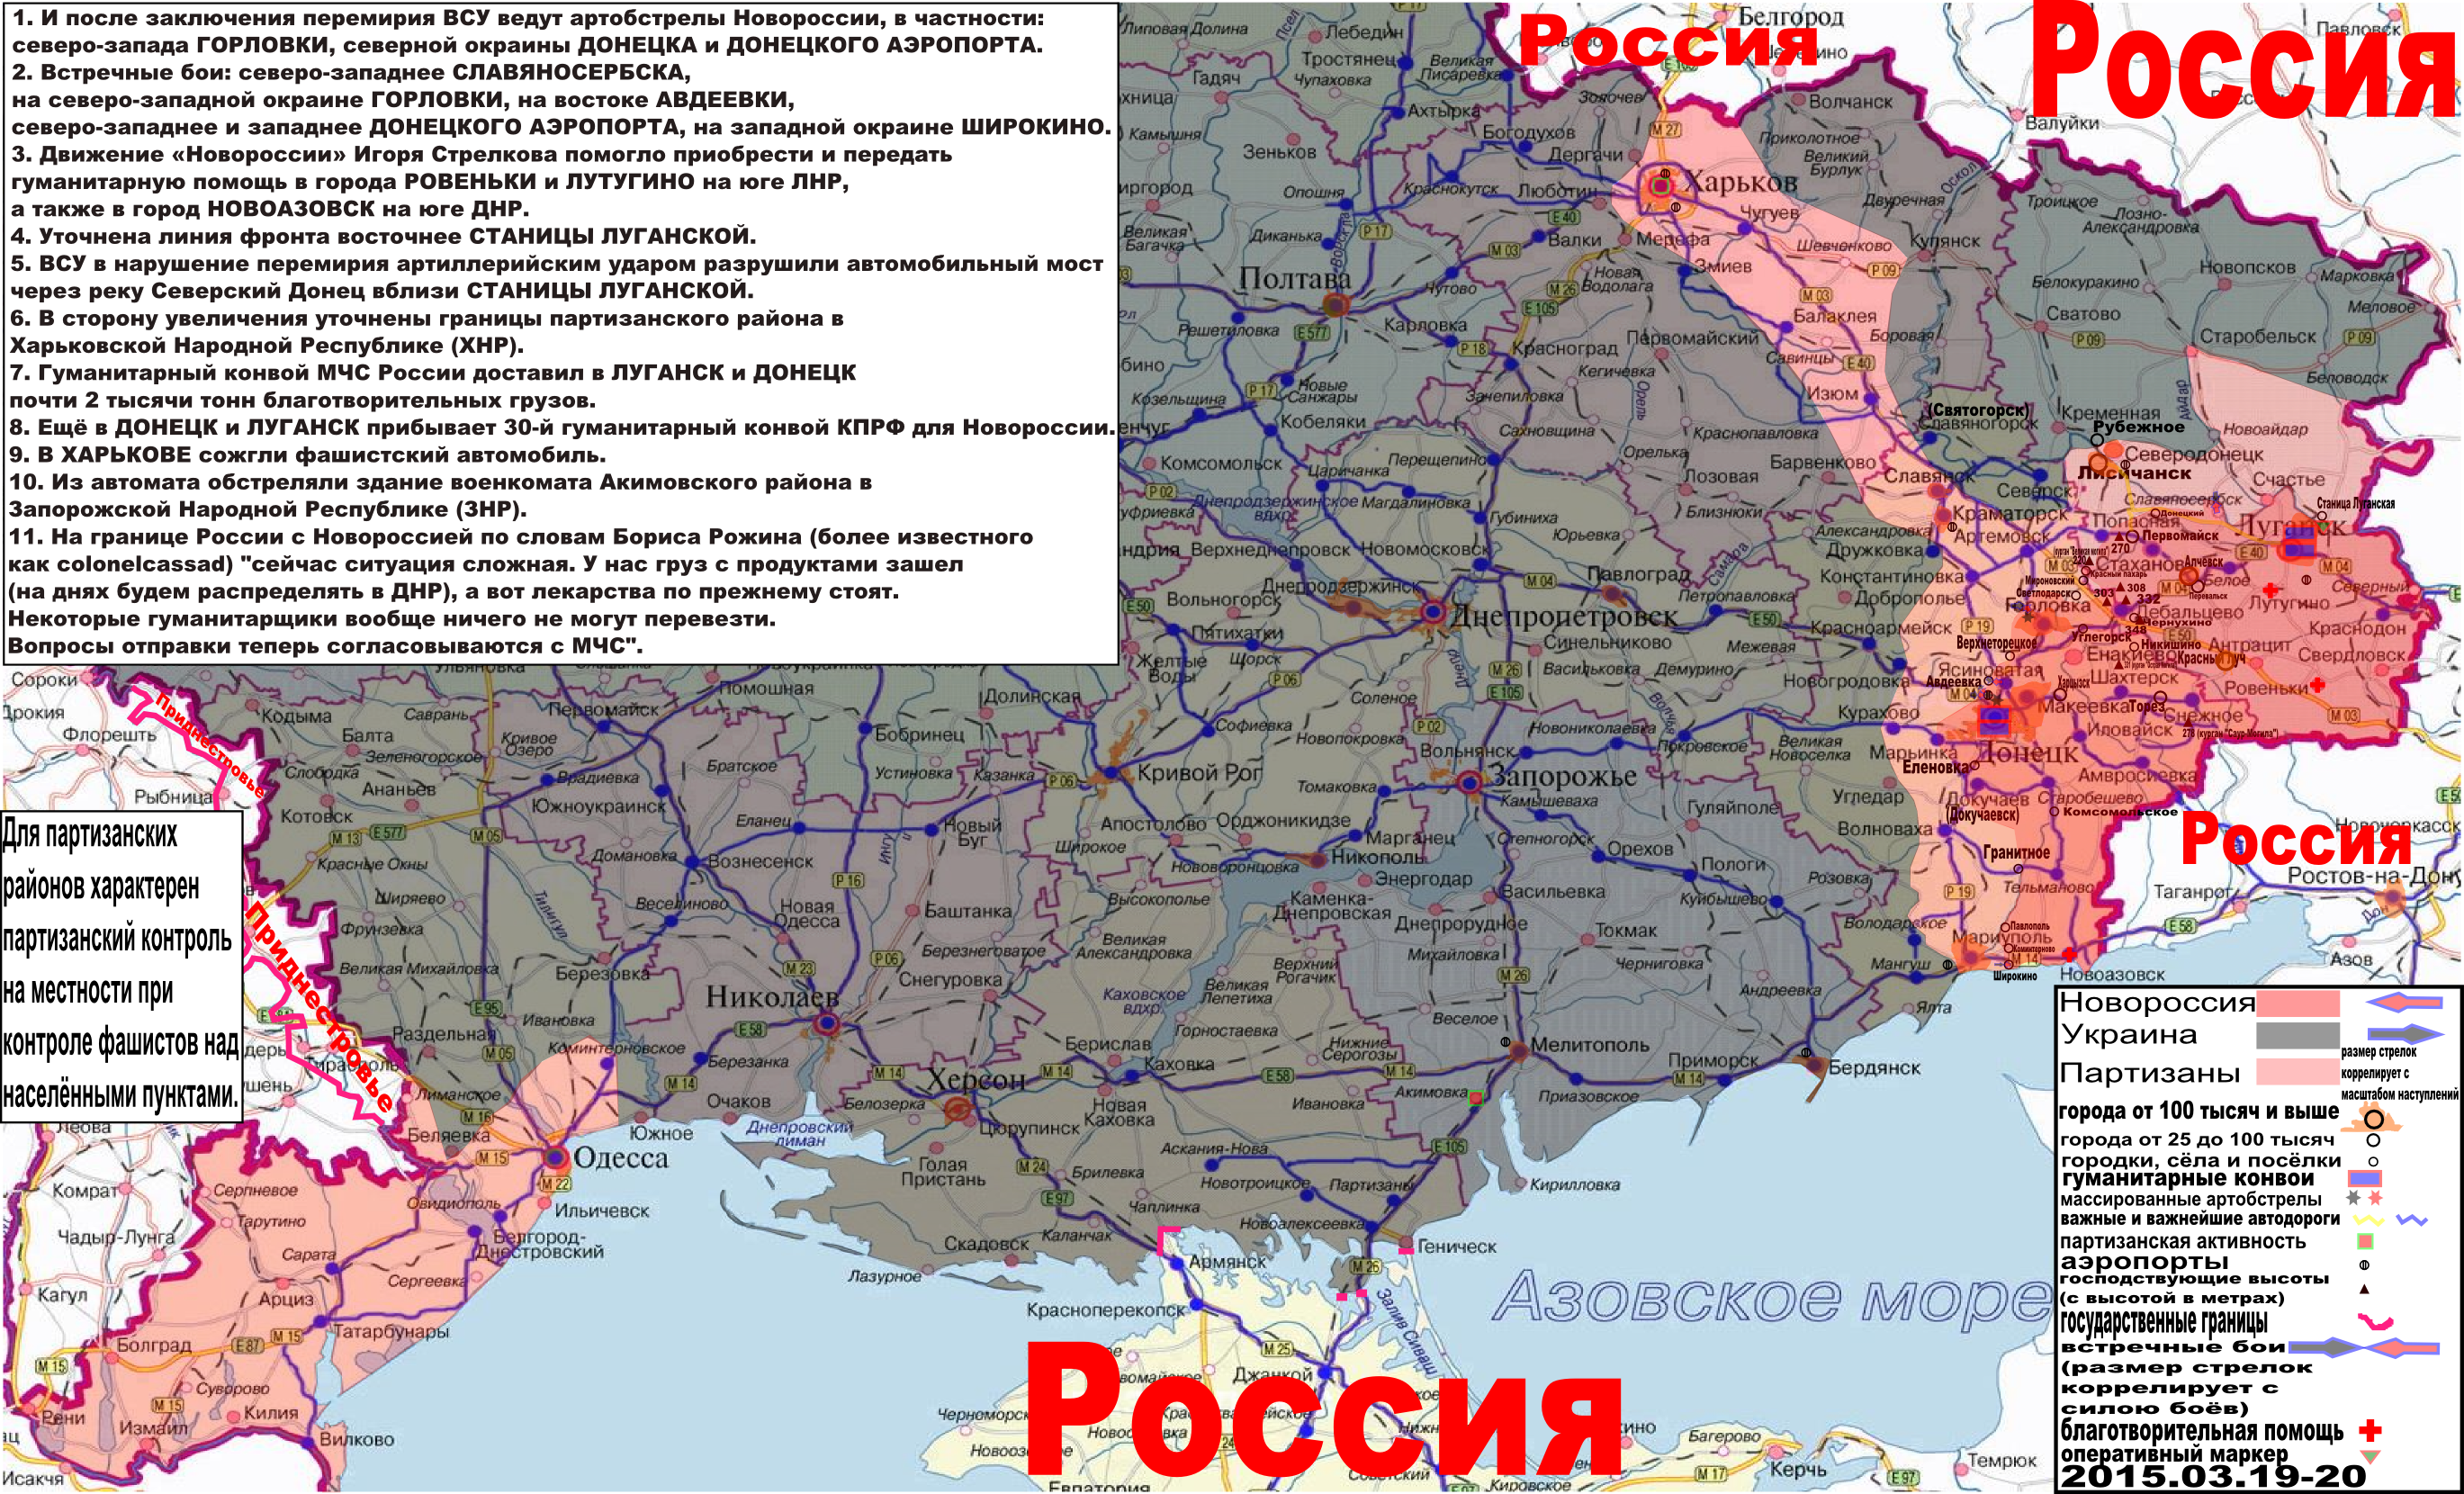 Карта боевых действий и гуманитарных вестей Новороссии с партизанскими районами за 19 - 20 марта 2015 года.